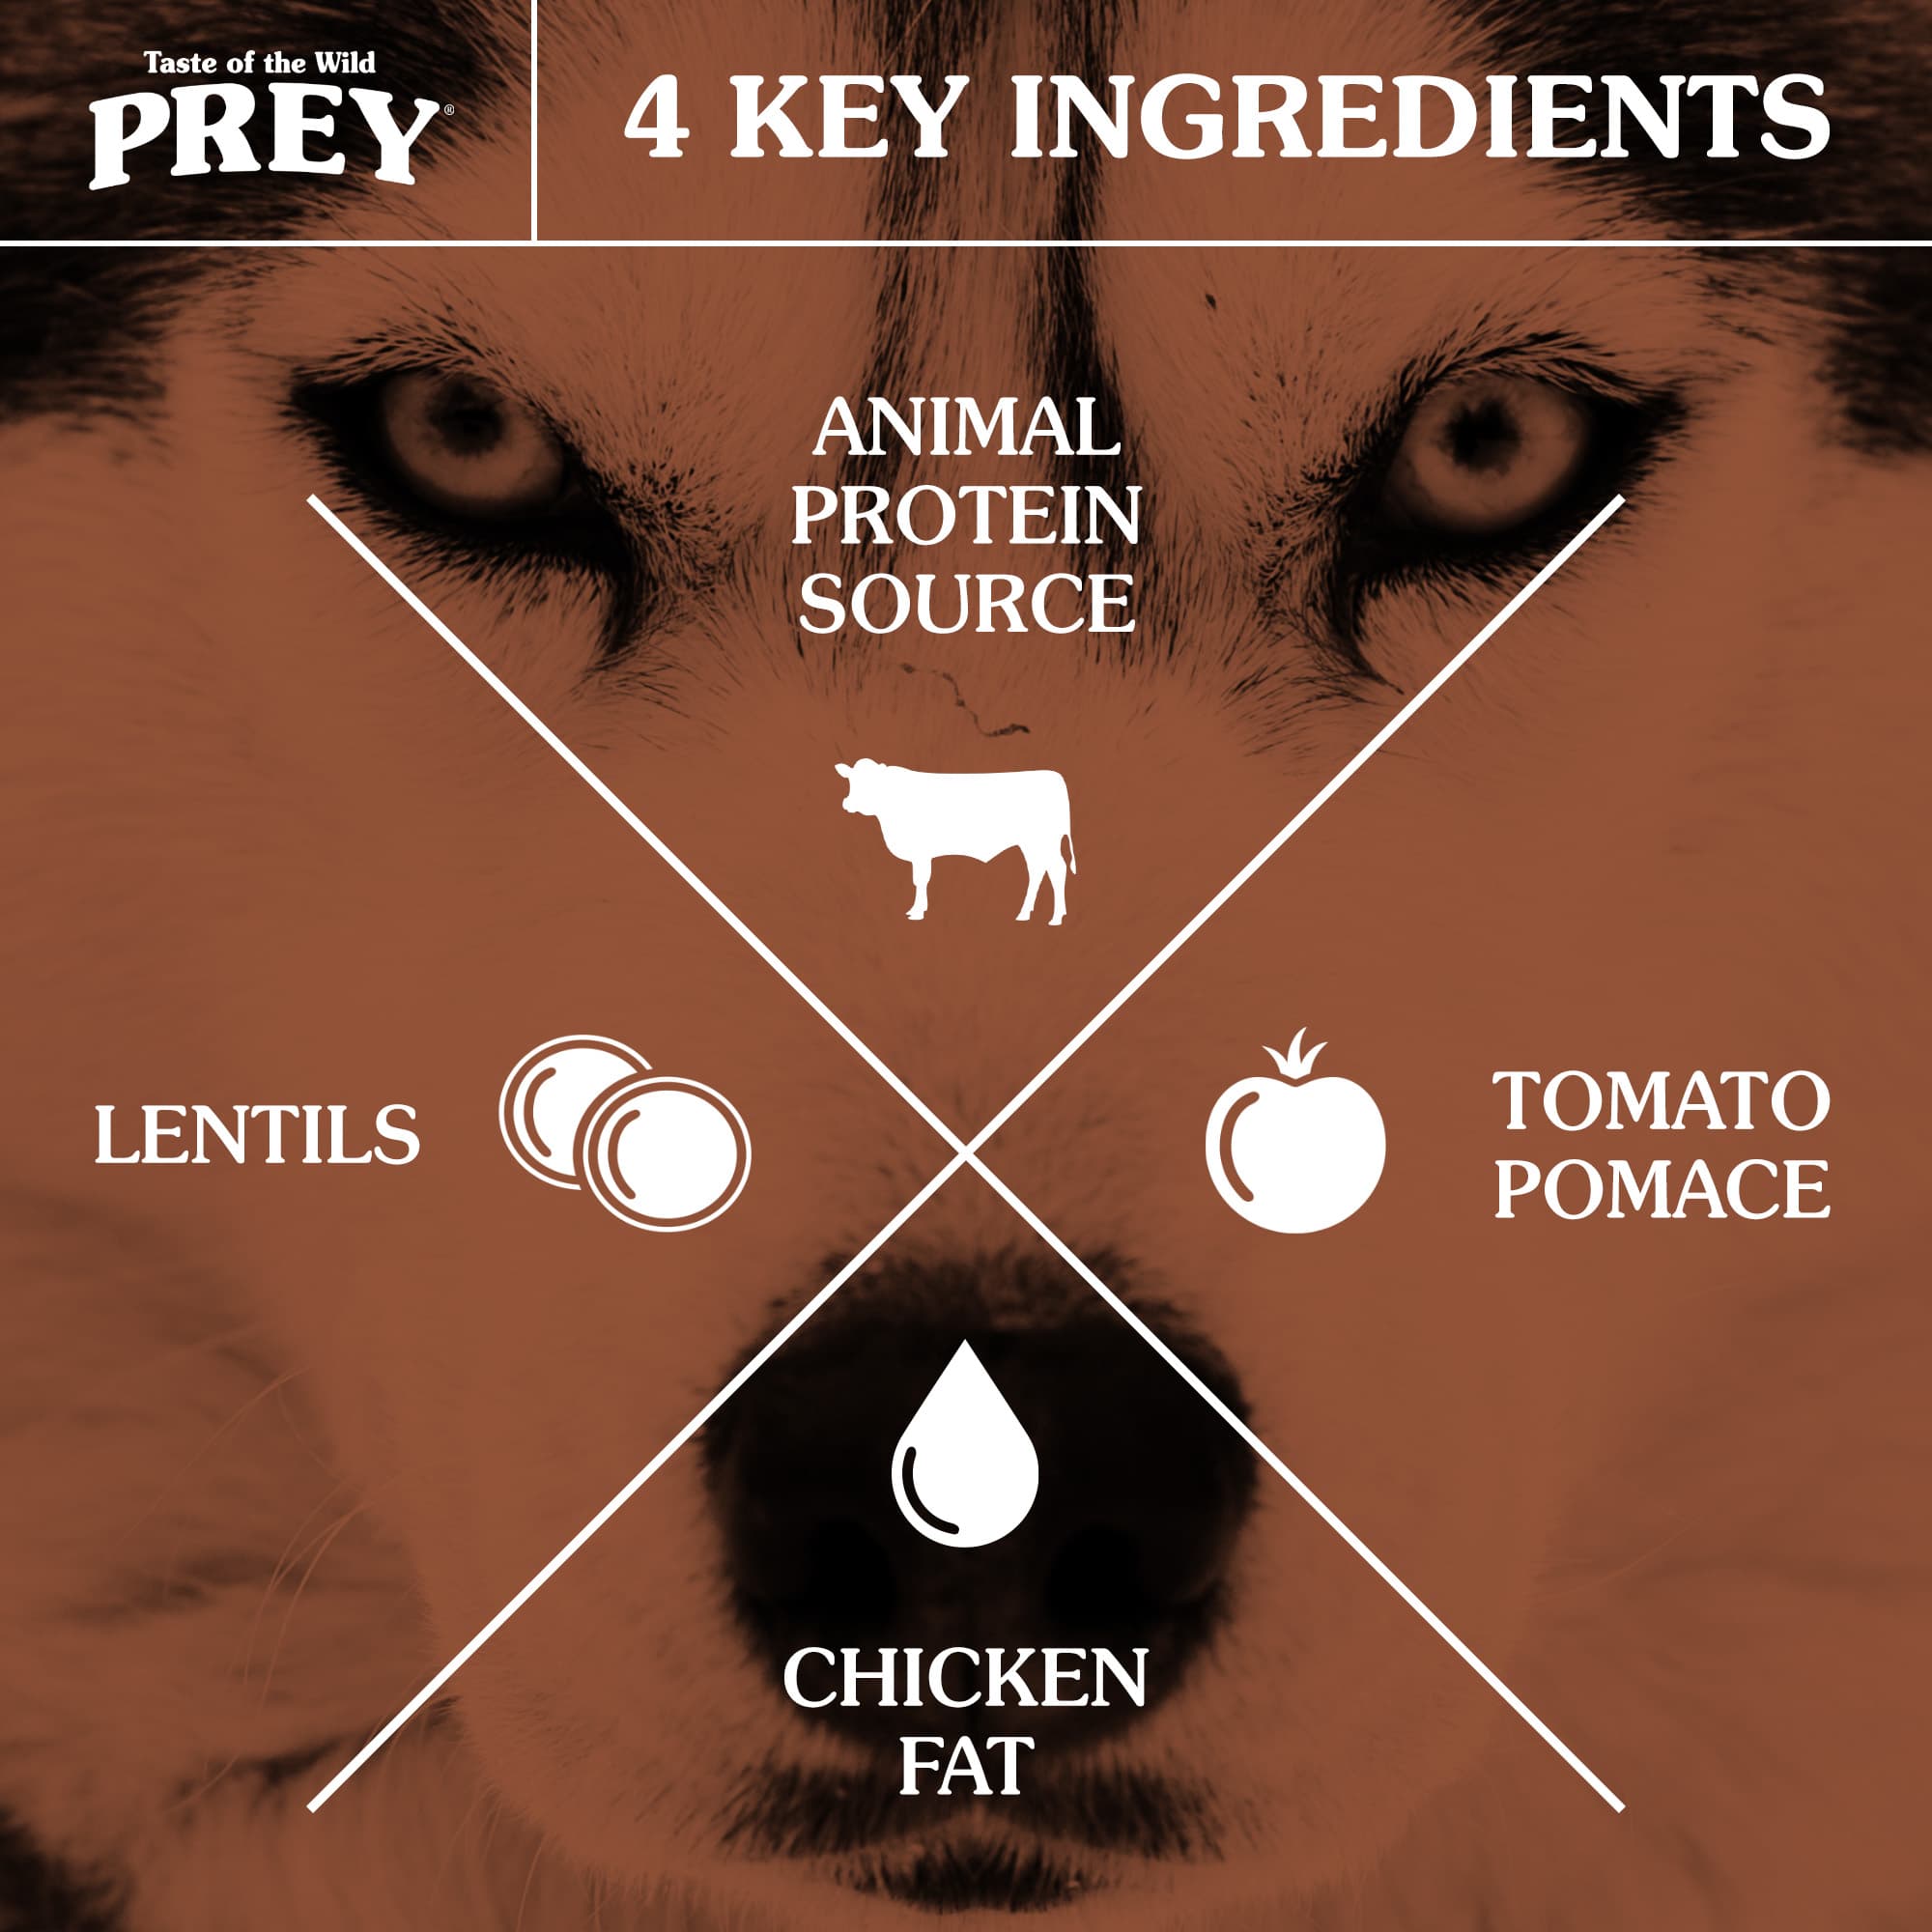 4 ingrédients clés pour chiens : source de protéines animales, pulpe de tomate, huile de tournesol et lentilles